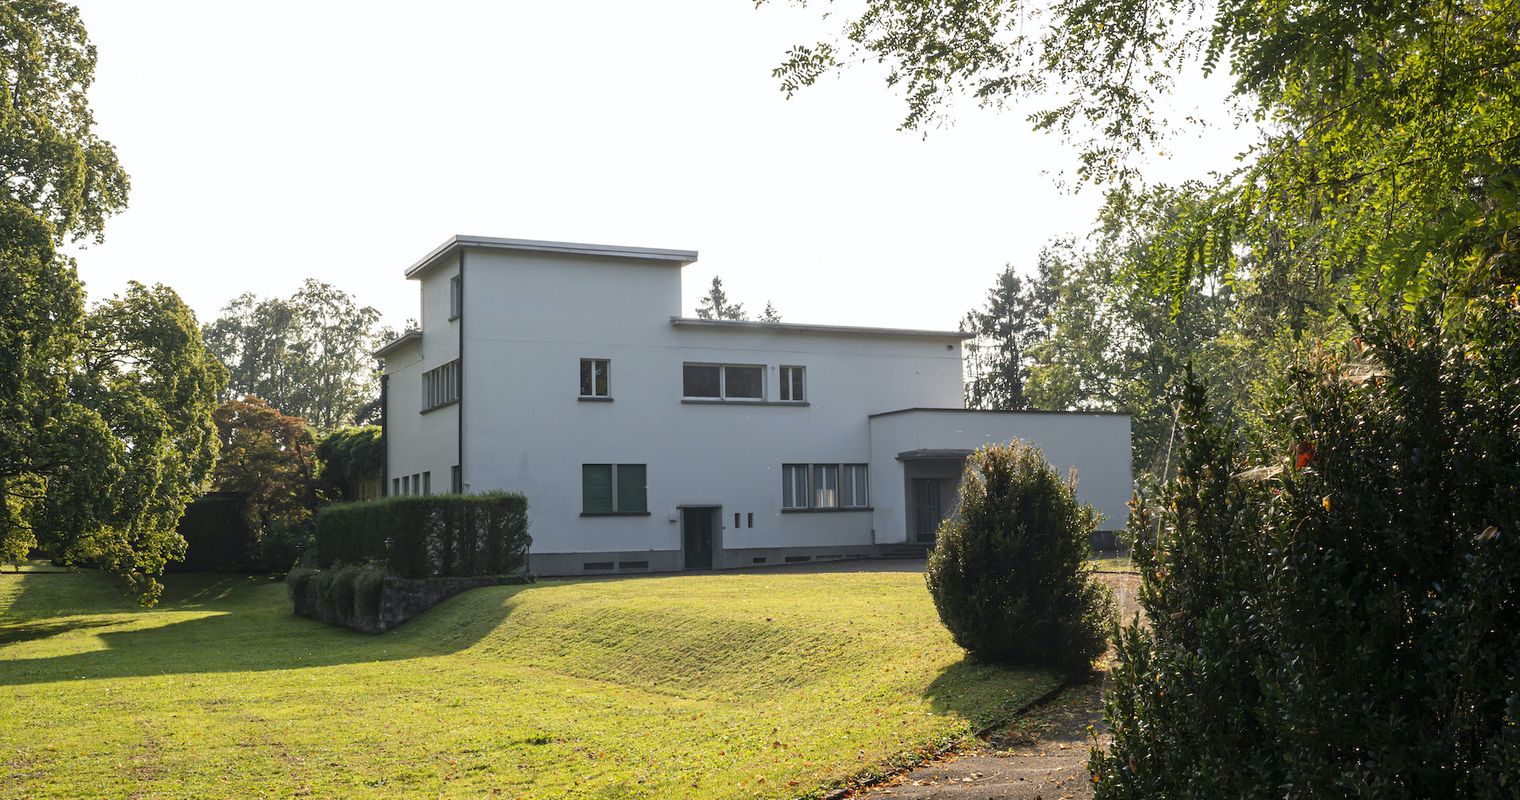 Luzern unterschreibt Vertrag für Rachmaninoff-Villa